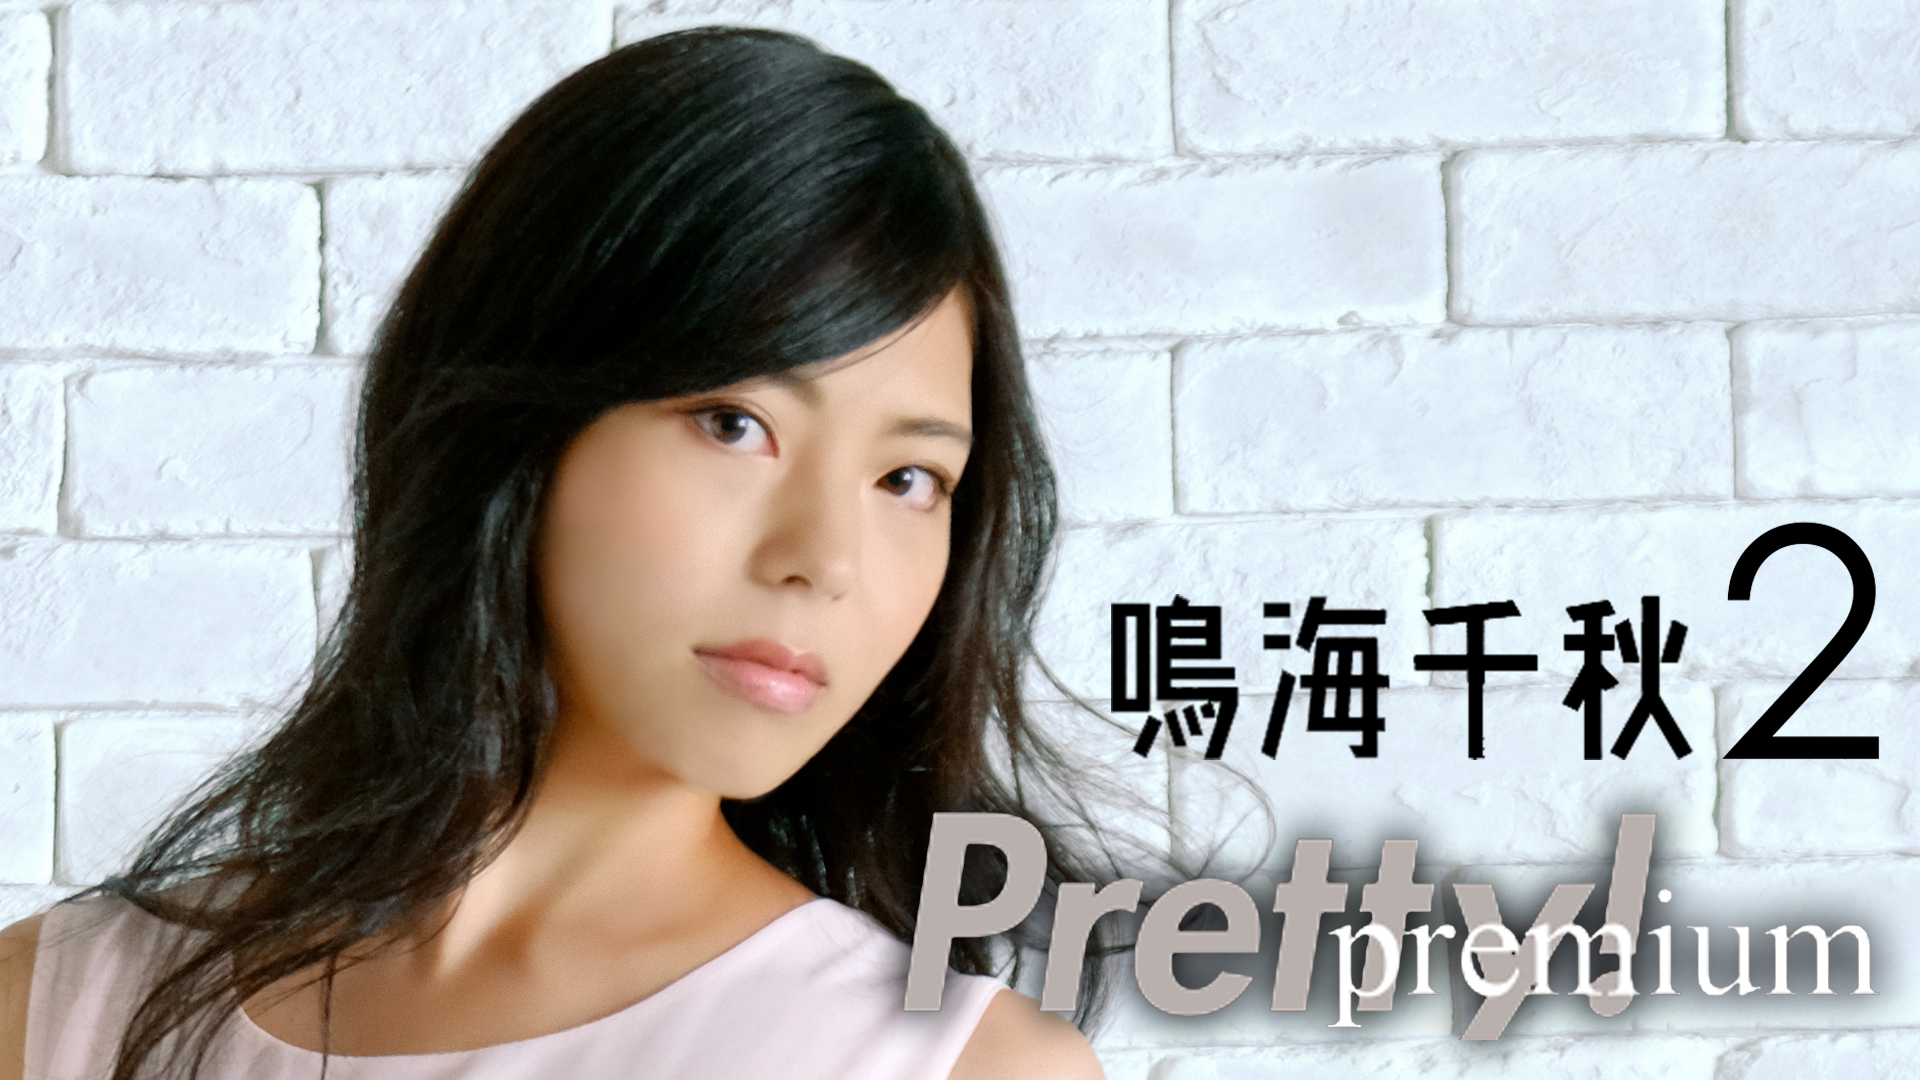 鳴海千秋 『Pretty！Premium 鳴海千秋2』(その他♡ / 2020) - 動画配信 | U-NEXT 31日間無料トライアル